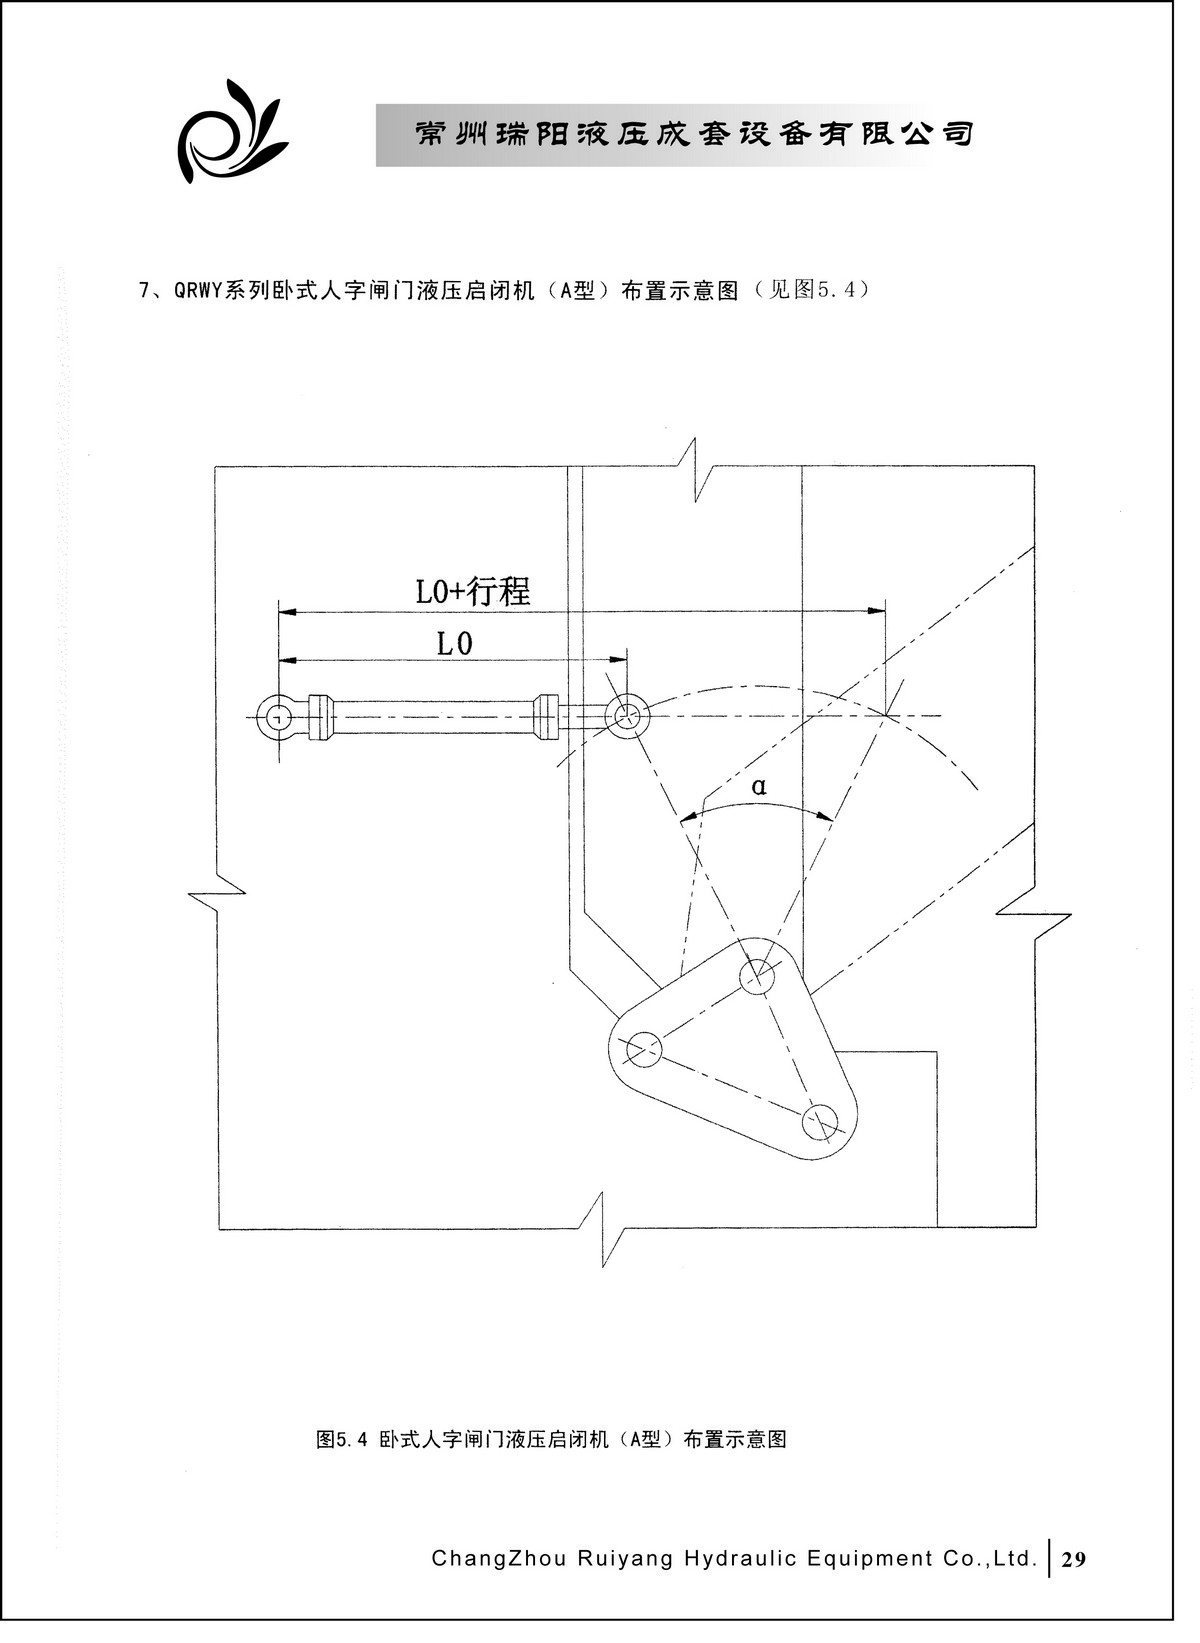 常州瑞阳液压成套设备有限公司产品样本2_页面_29.JPG